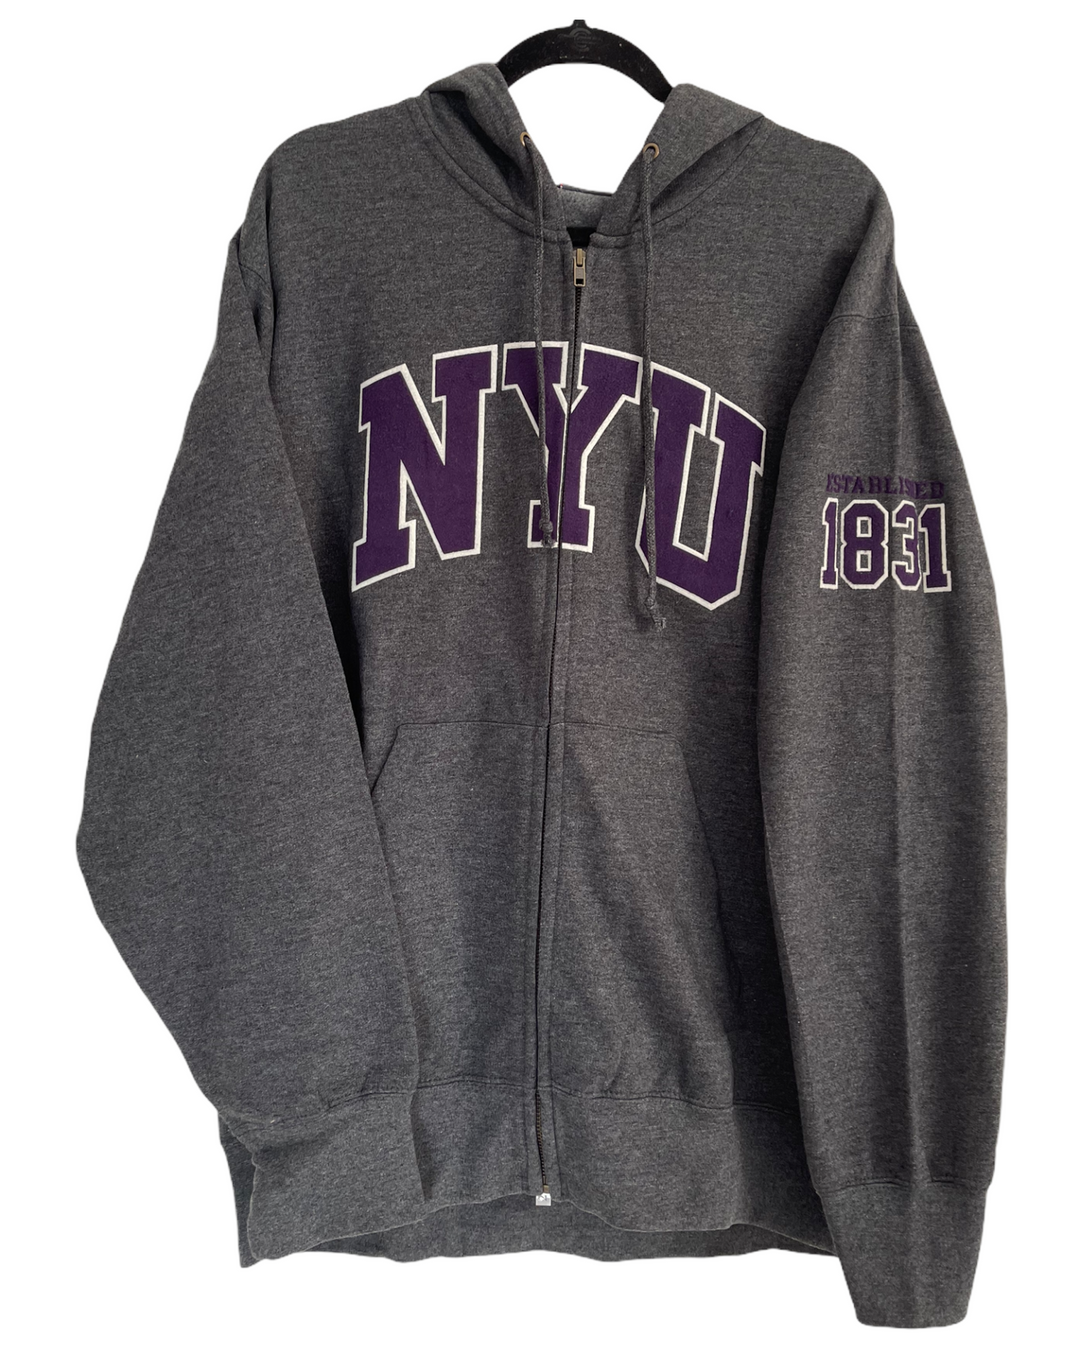 NYU Vintage Zip Up Sweatshirt